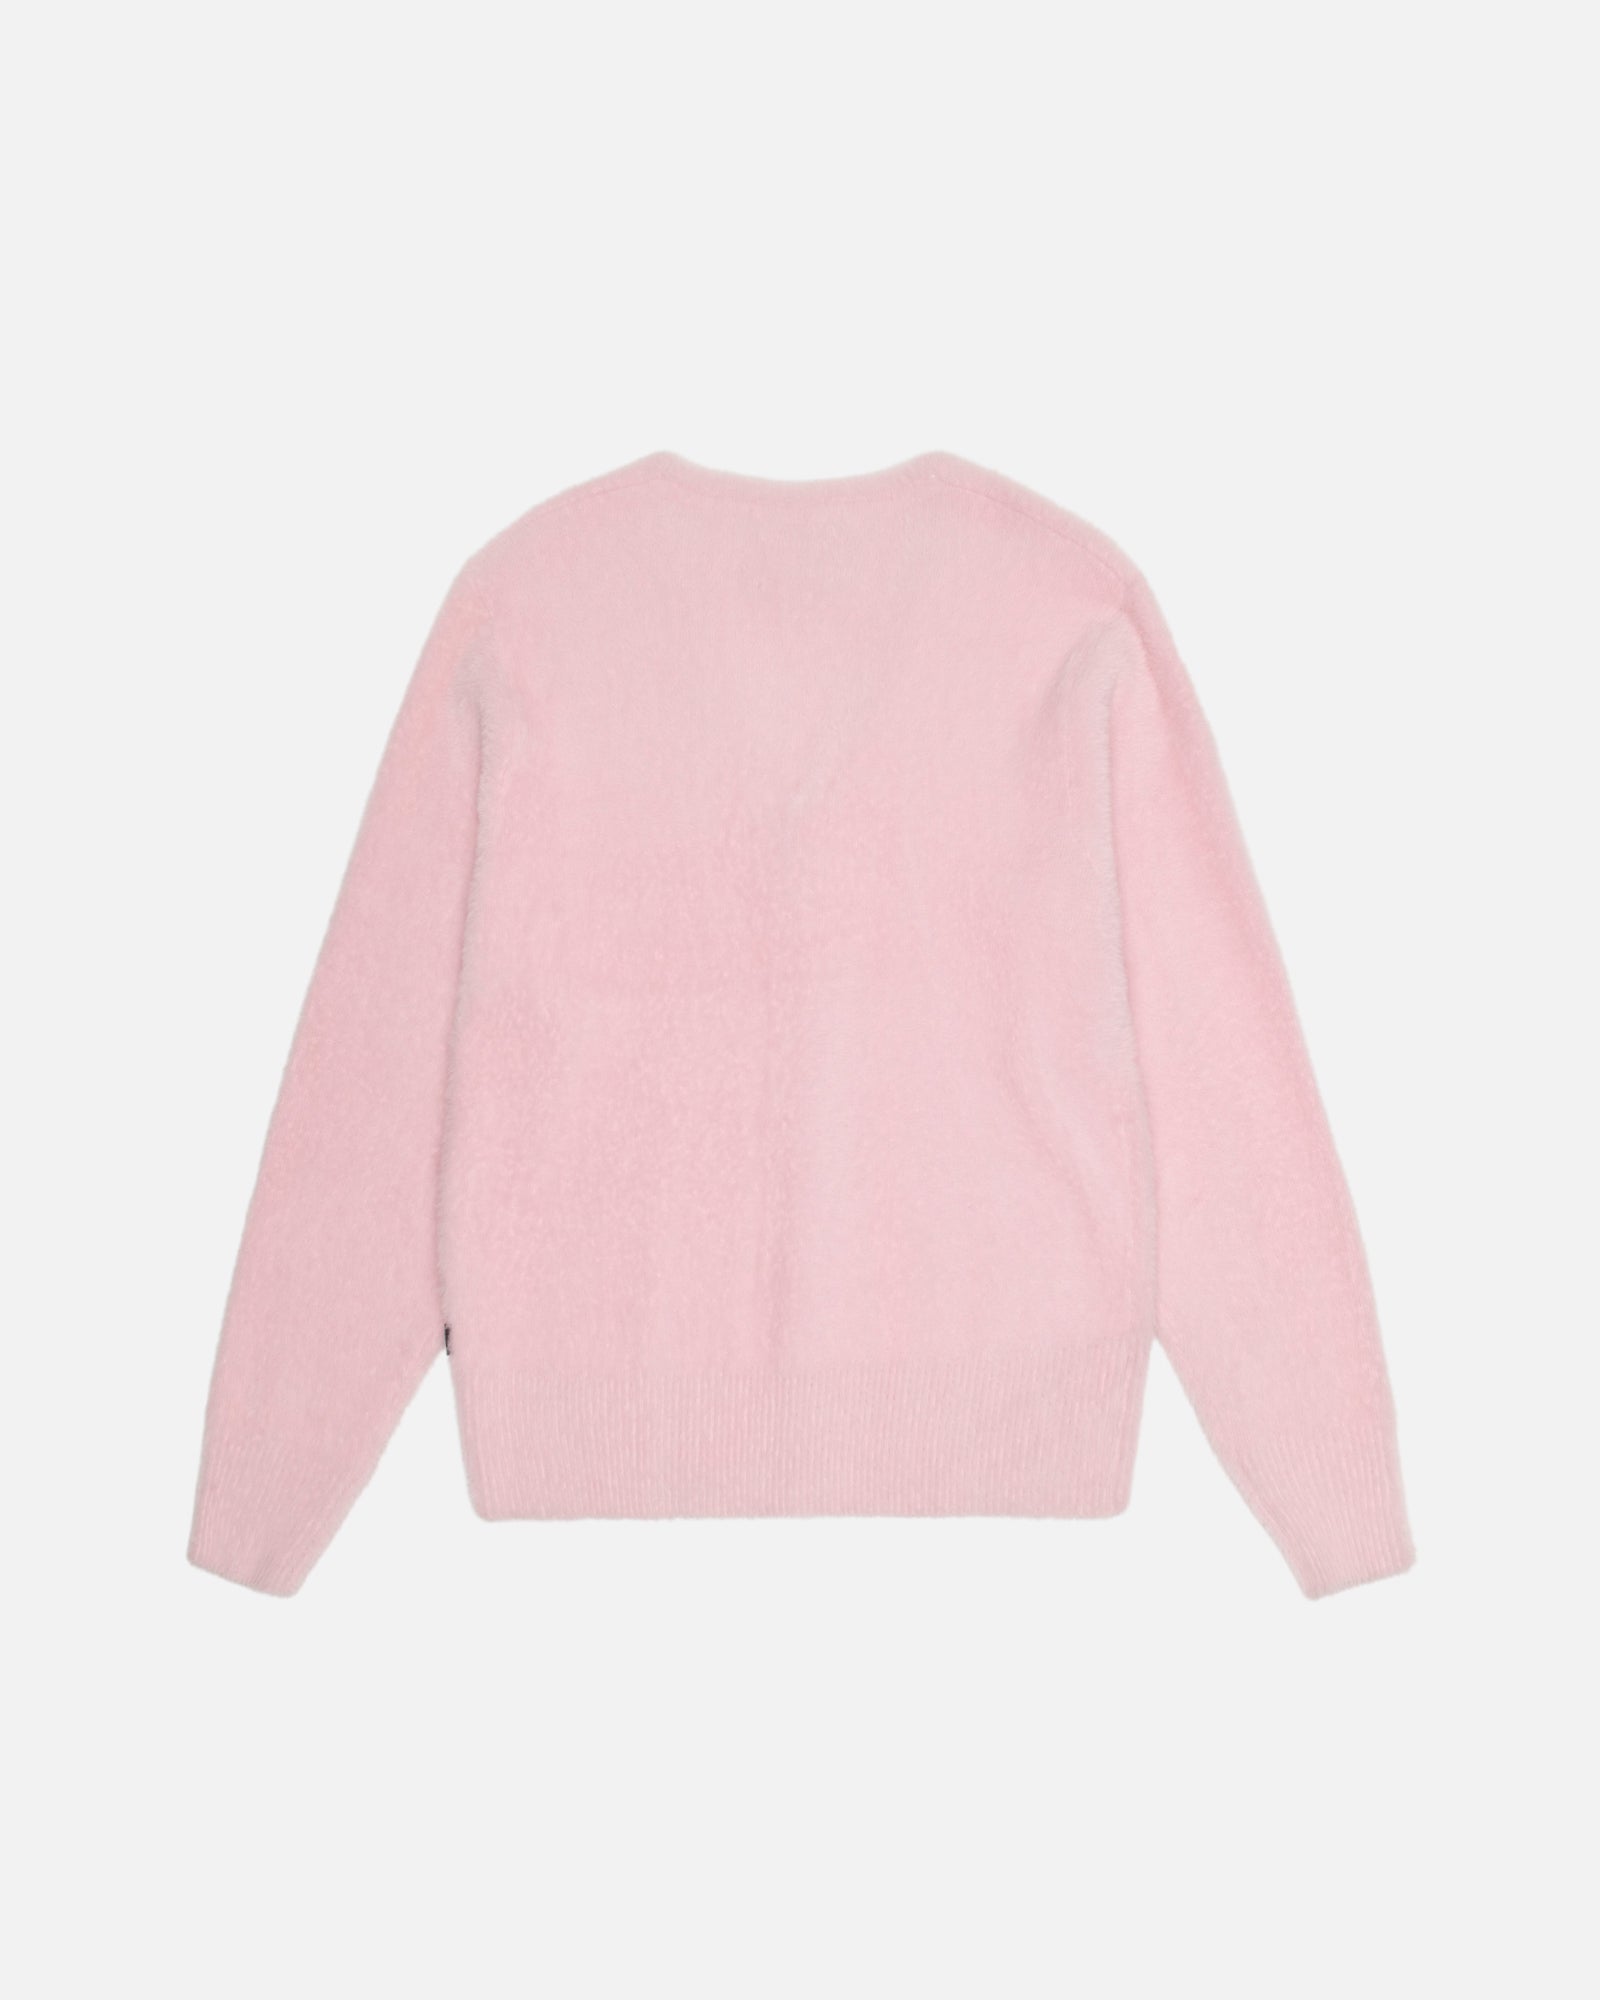 Stussy Stock Sweater Pink Mサイズ - スウェット